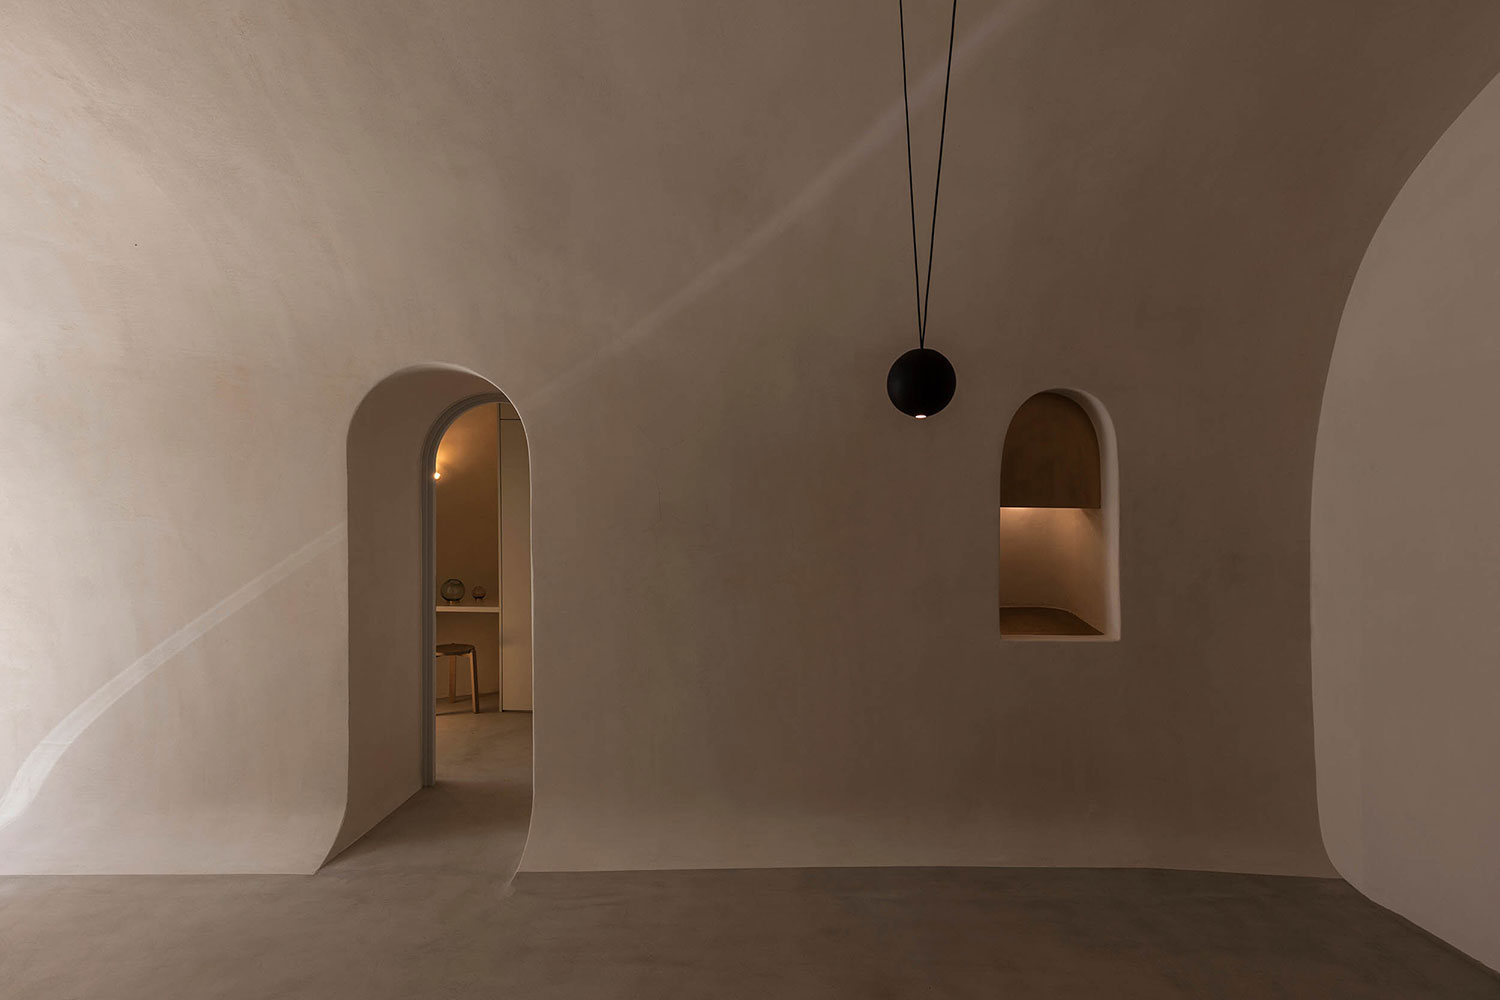 Interior de vivienda minimalista con paredes lisas en tono crema y suelo de microcemento, con una ventana y una puerta con arco ovalado. Poppyns Magazine